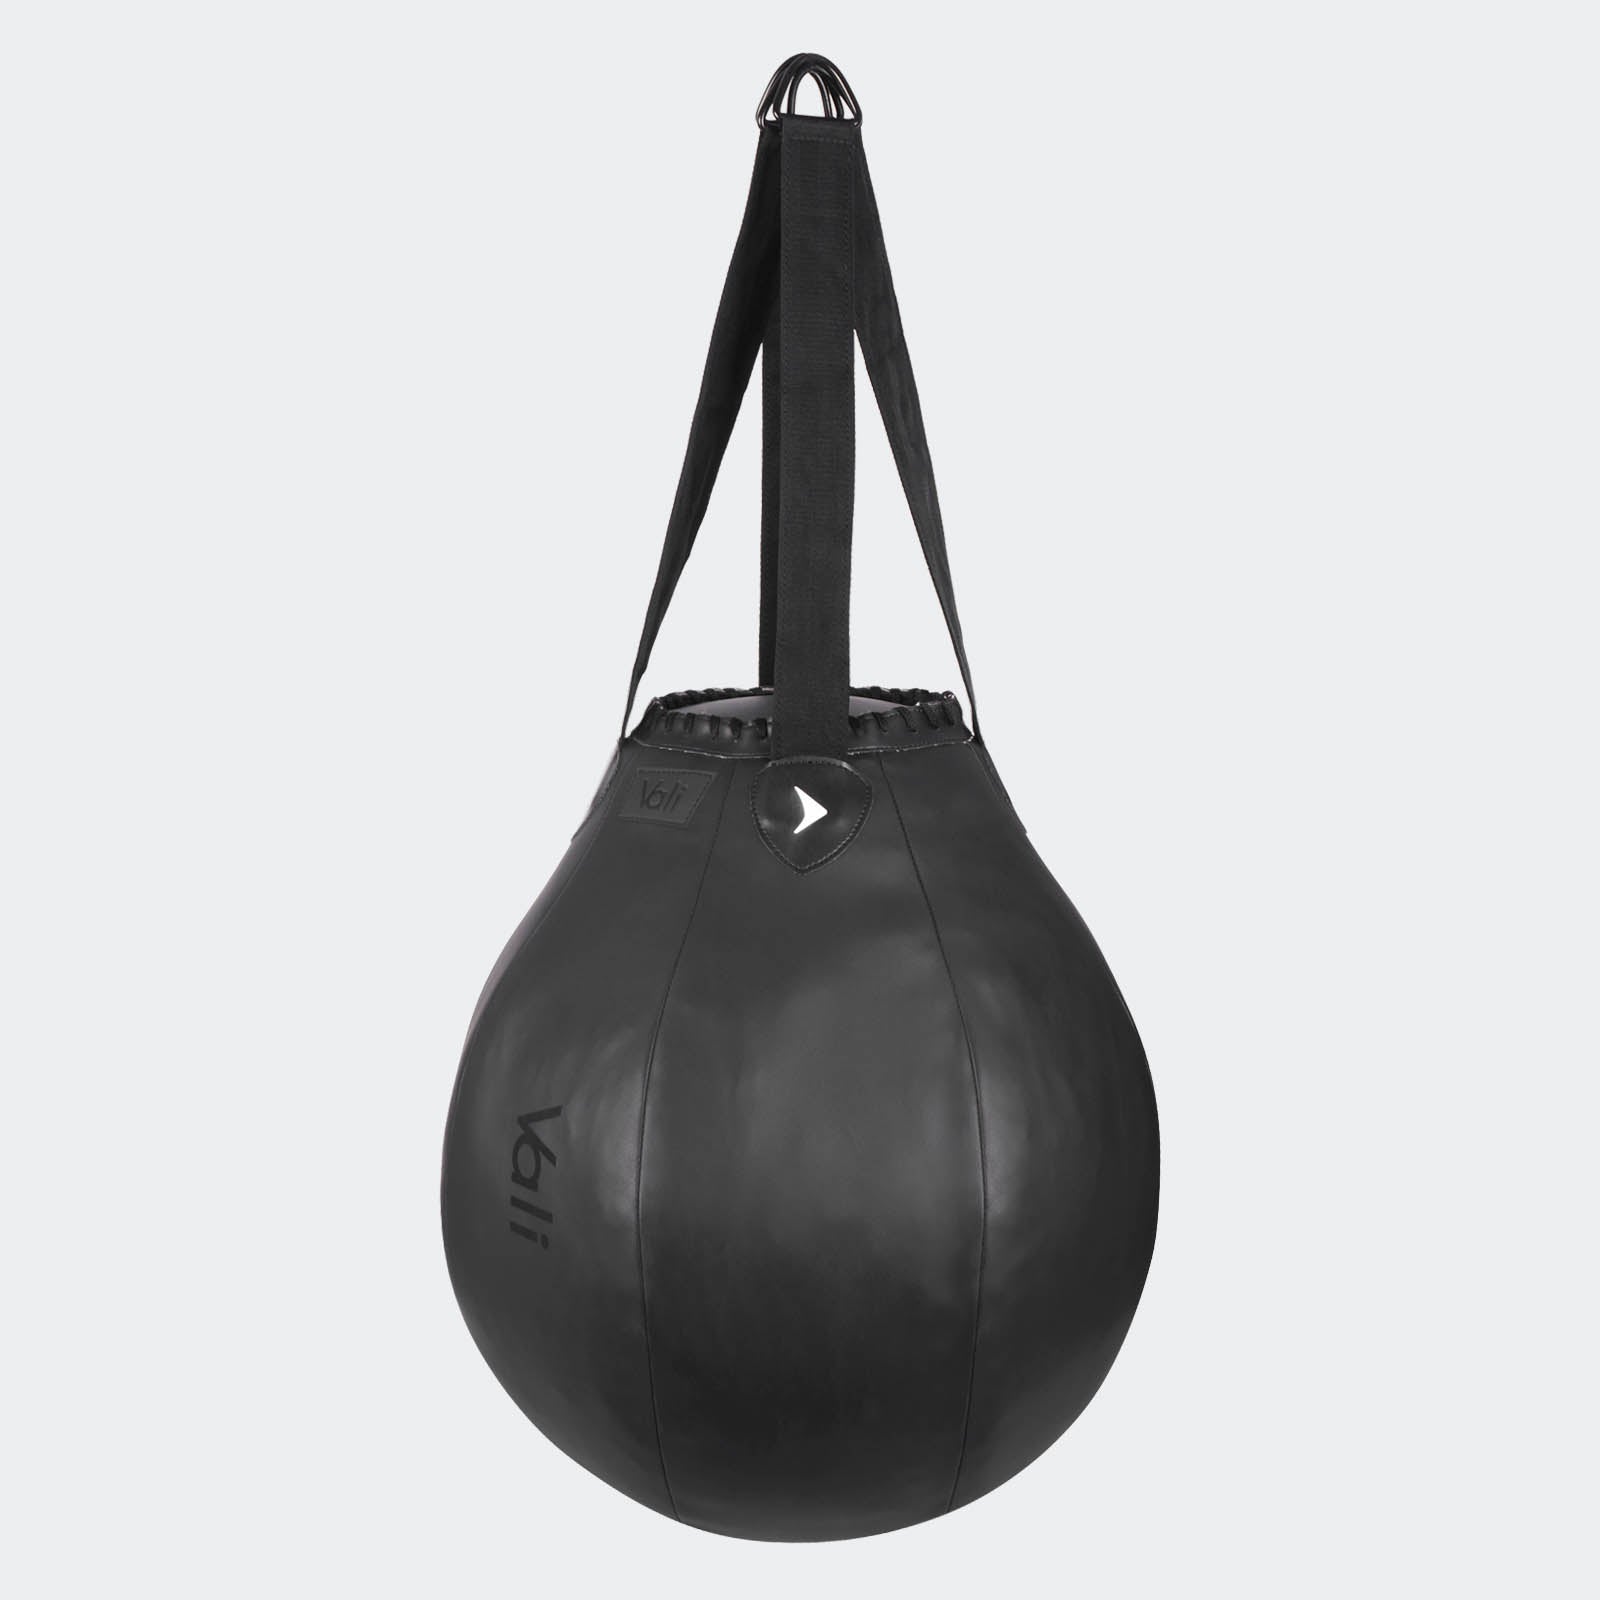 Spare Ball For Nista Cobra Reflex Bag